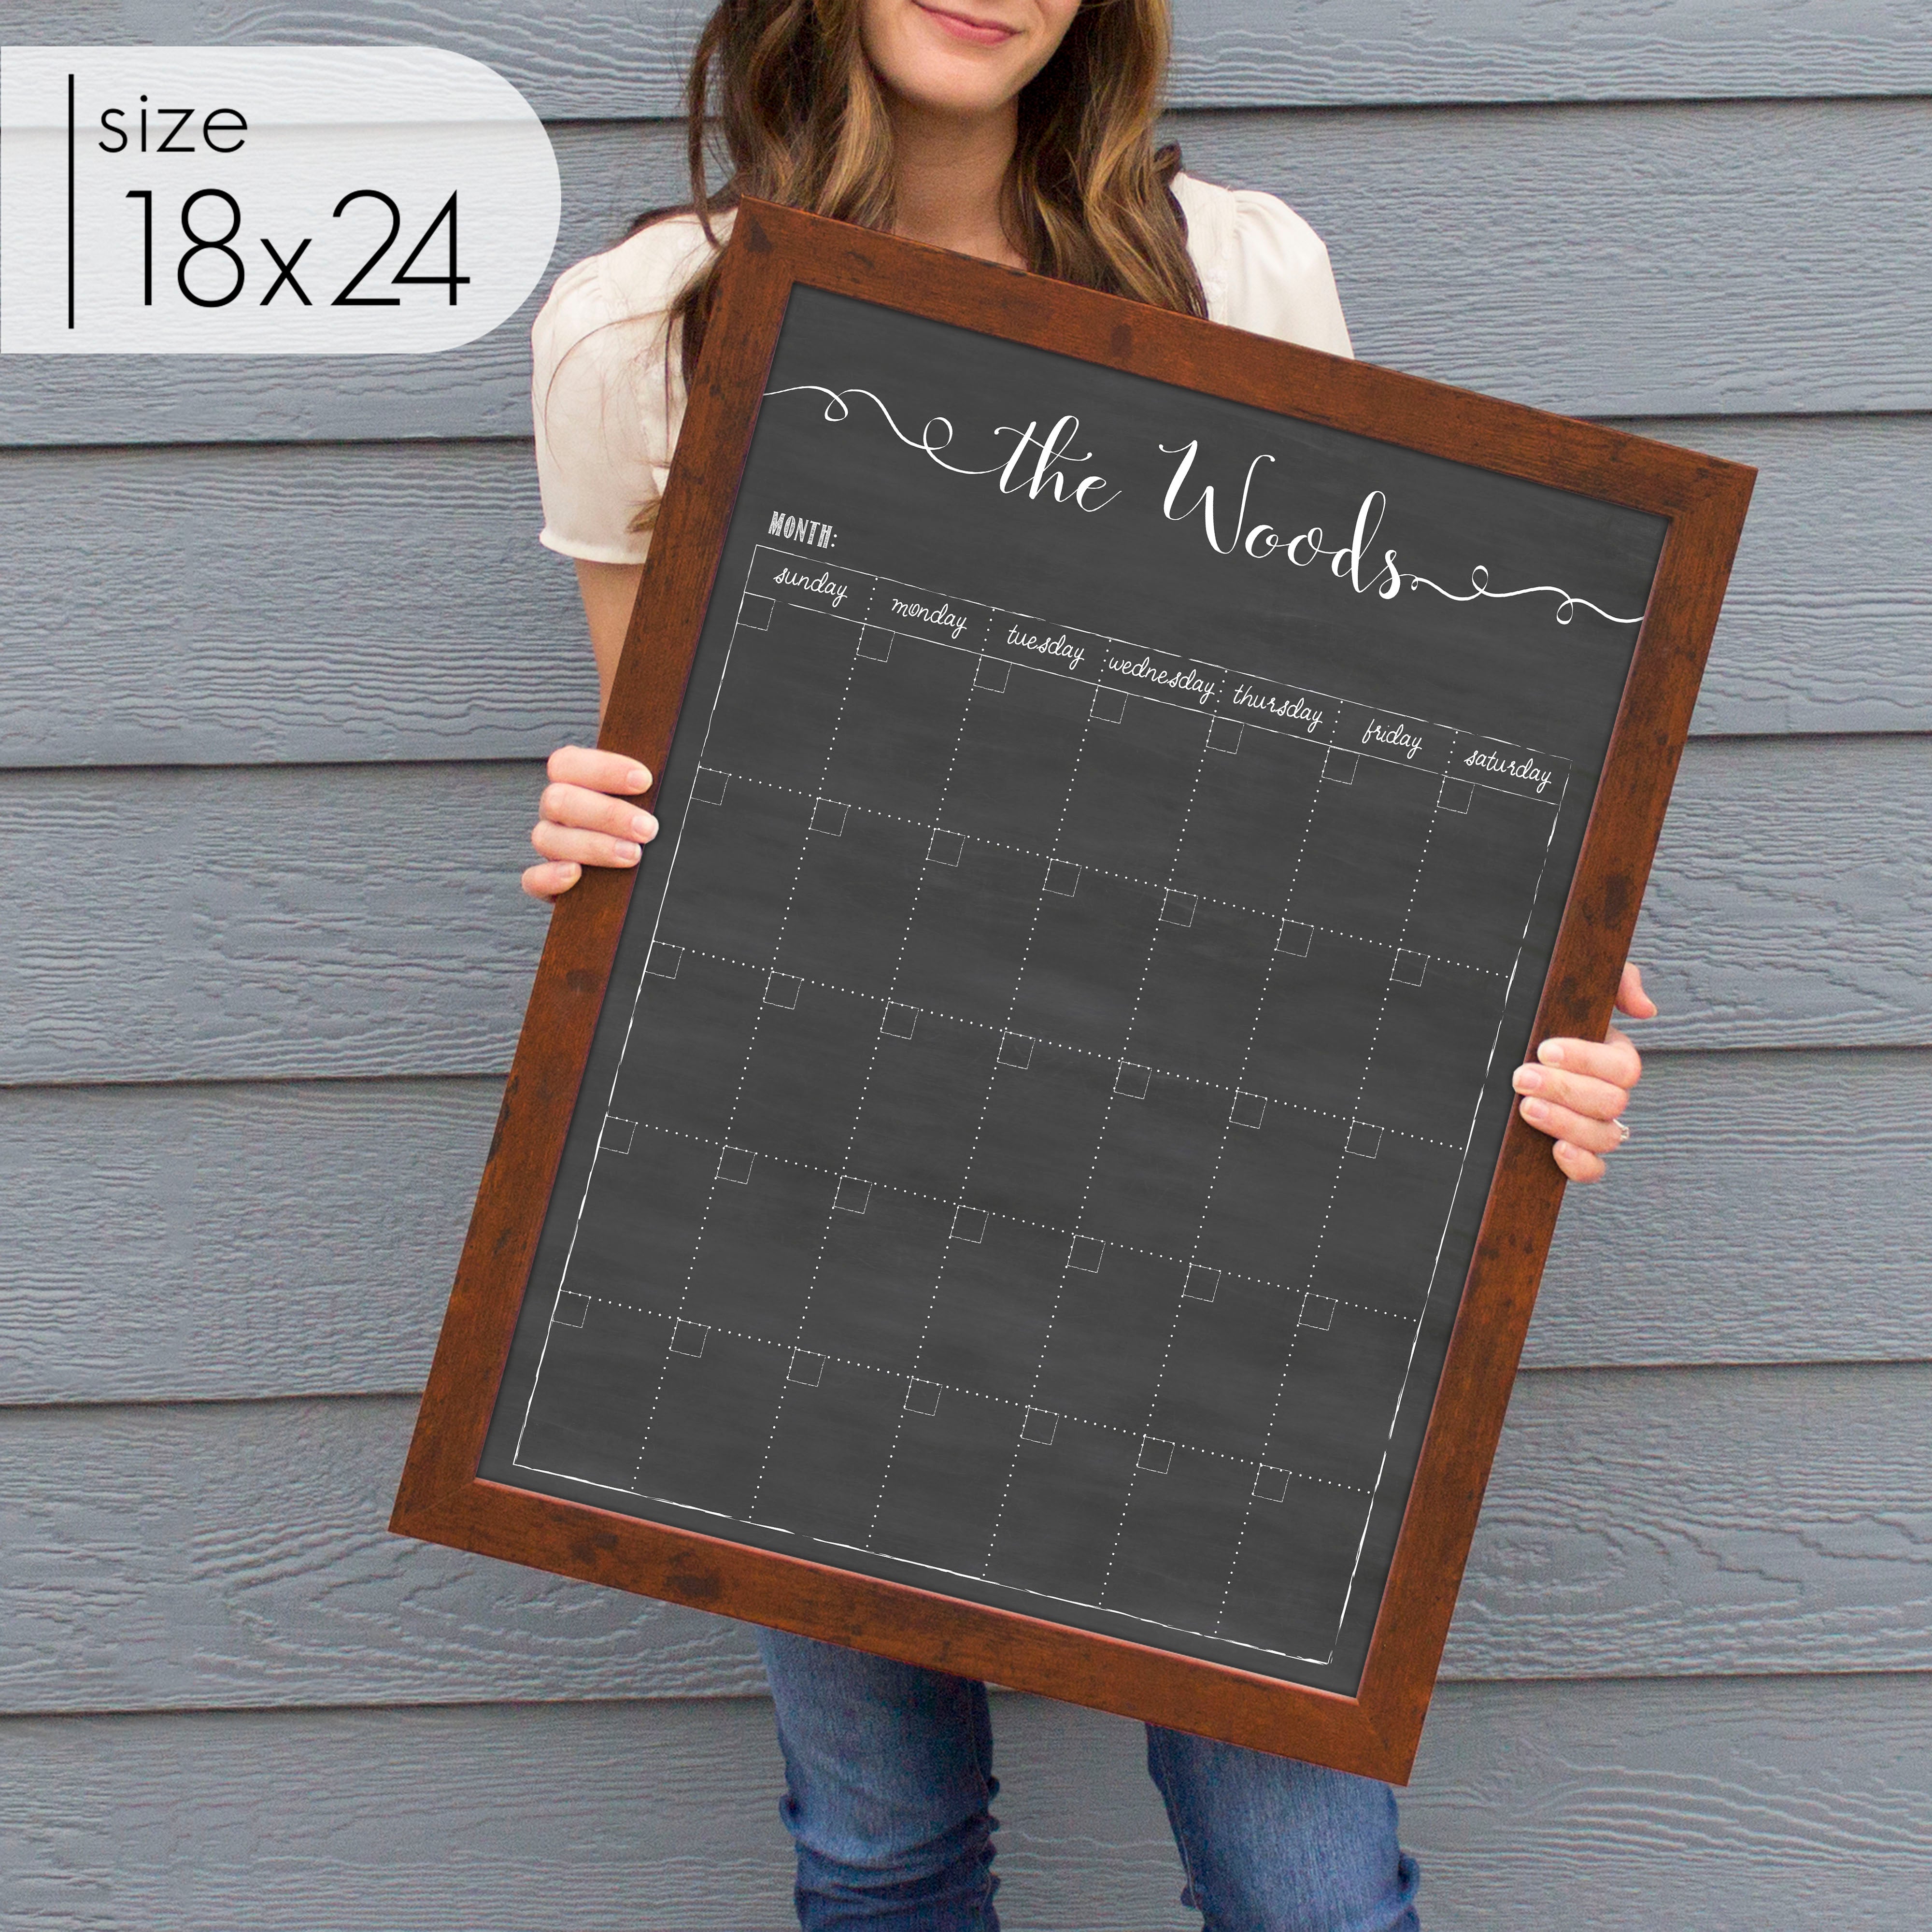 Monthly Framed Chalkboard Calendar | Vertical Knope